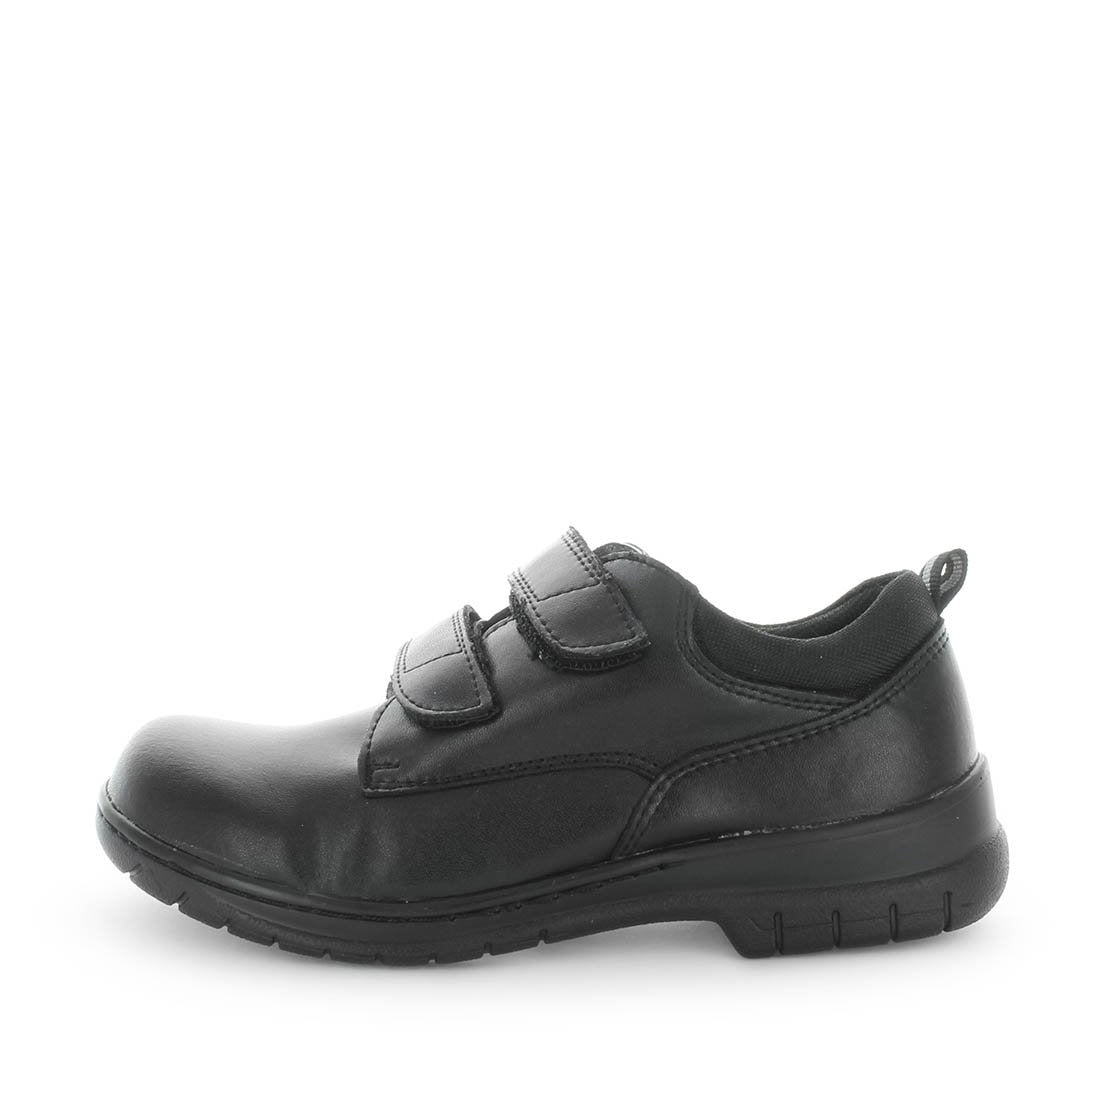 JACEN by WILDE SCHOOL - iShoes - School Shoes, School Shoes: Junior Boy's, School Shoes: Junior Girl's, School Shoes: Youth - FOOTWEAR-FOOTWEAR